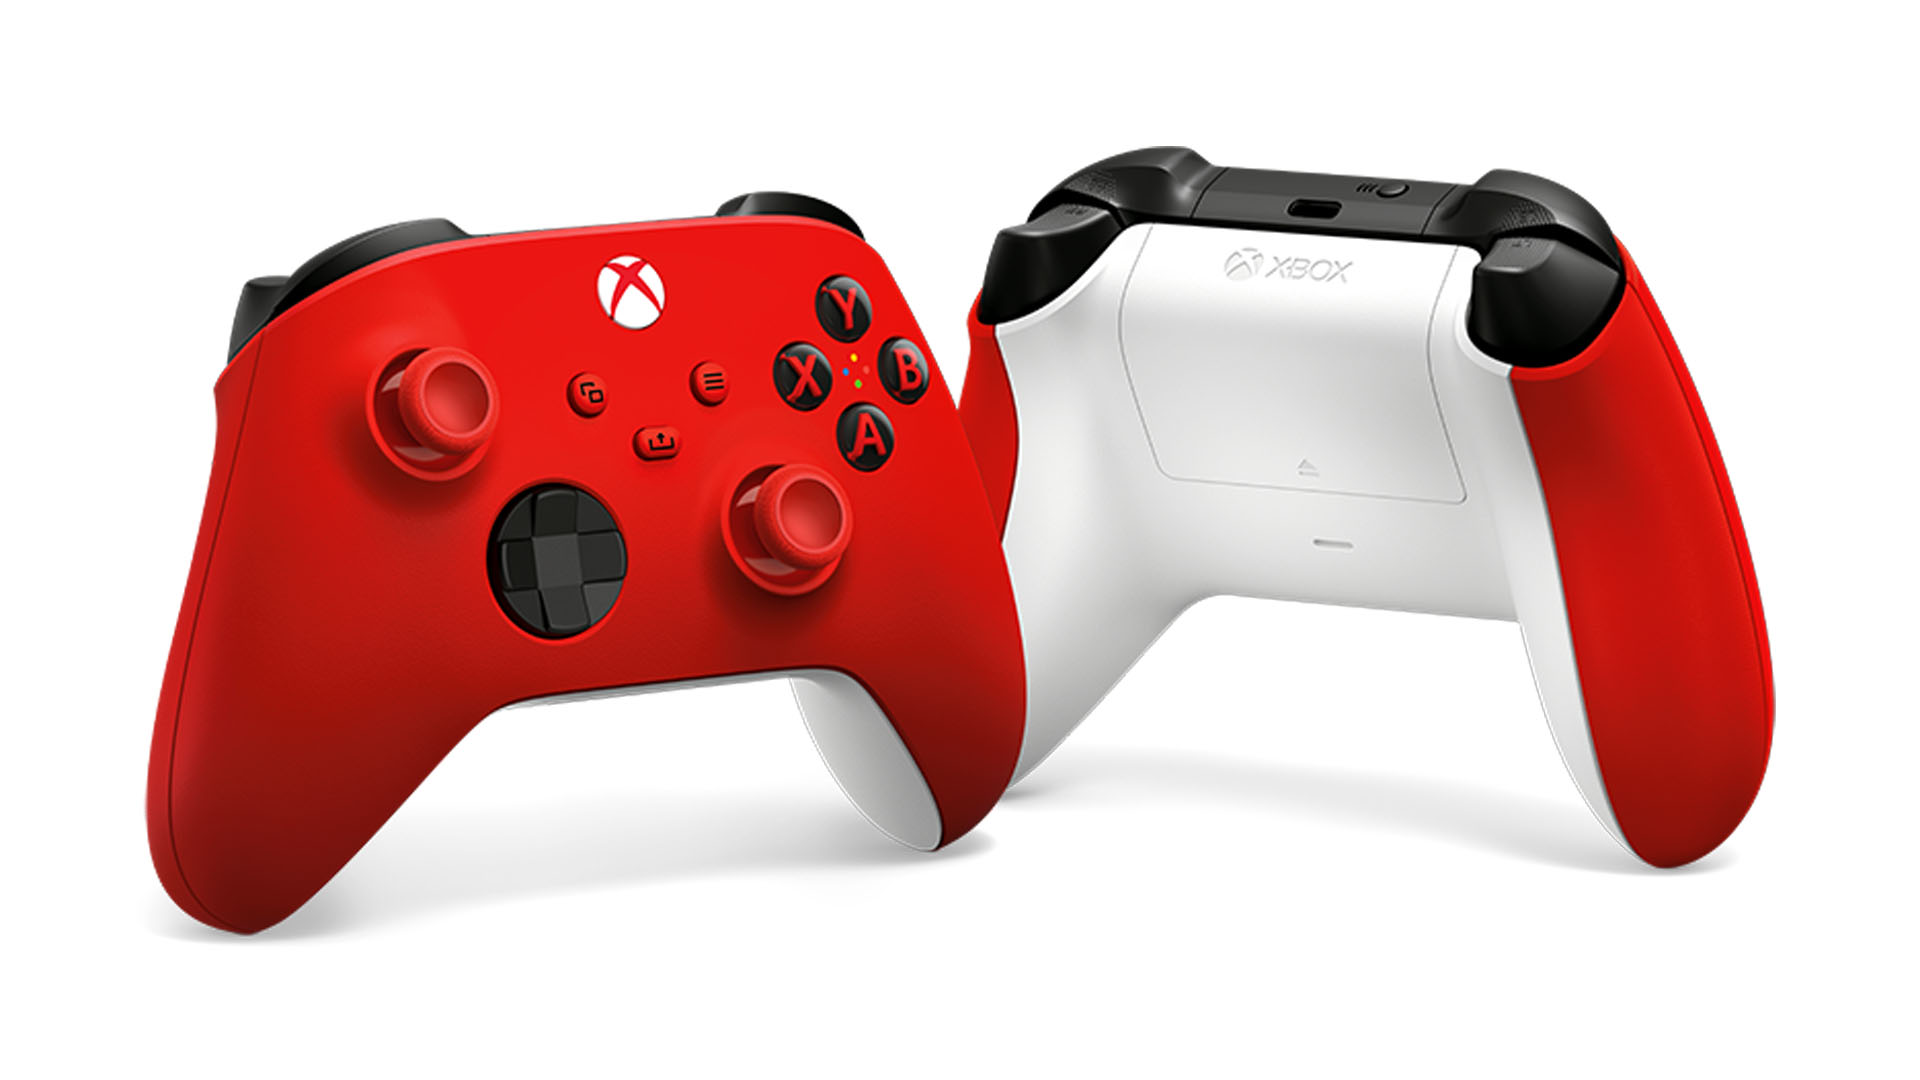 Bestelle jetzt den neuen Xbox Wireless Controller in Pulse Red HERO